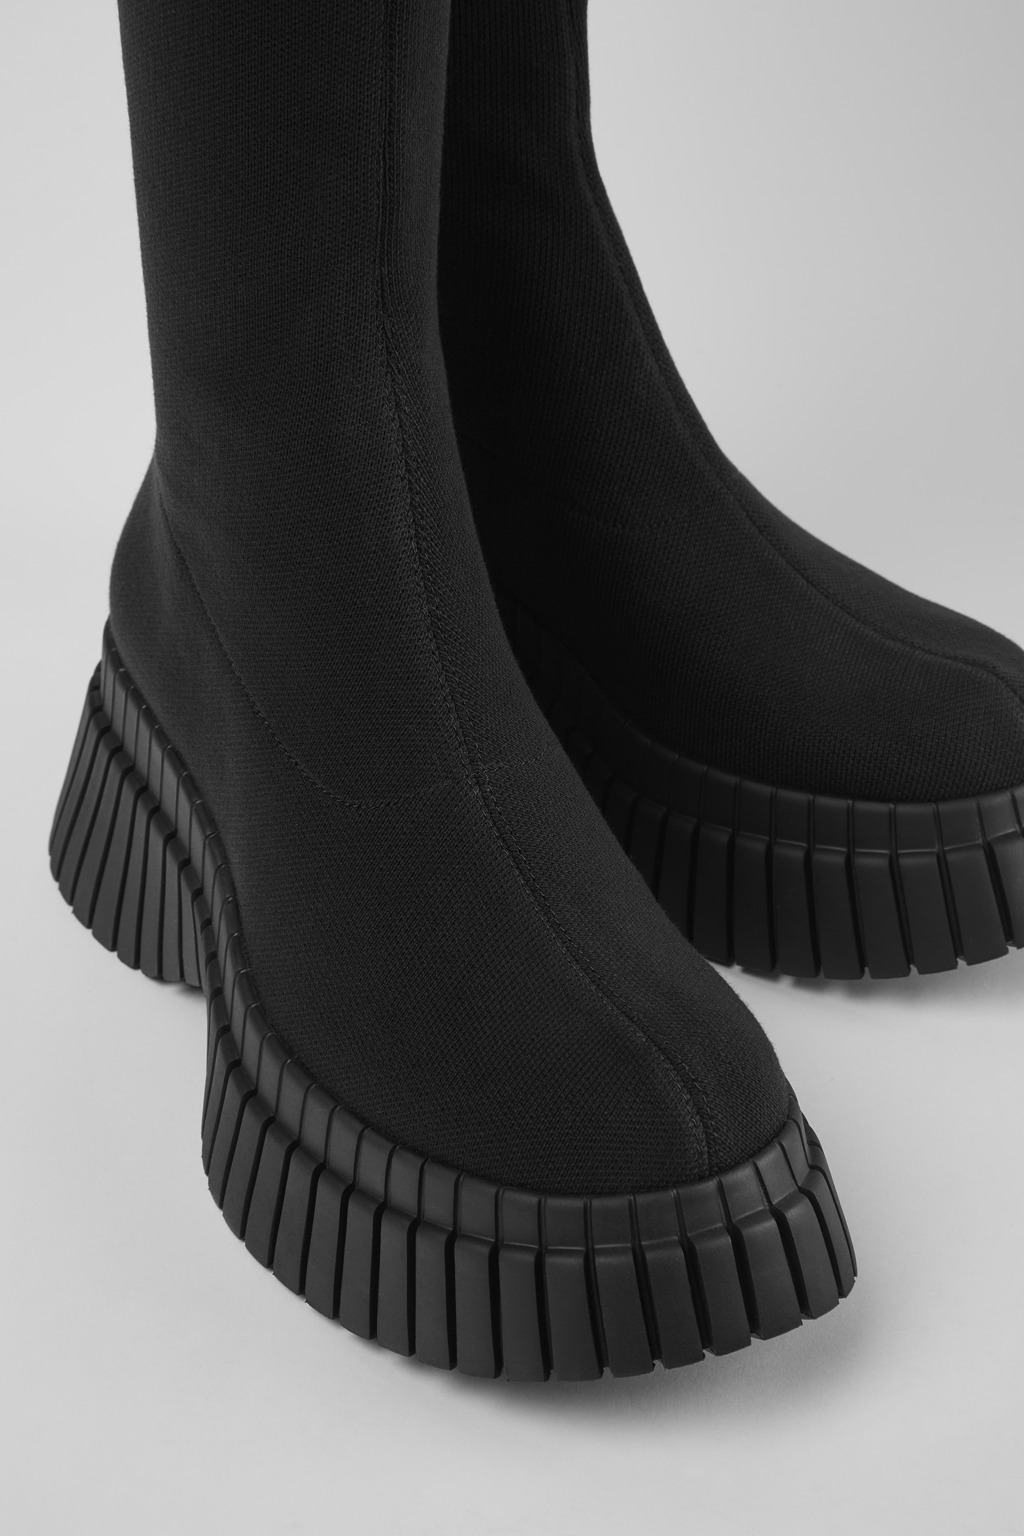 BCN Black textile boots for women